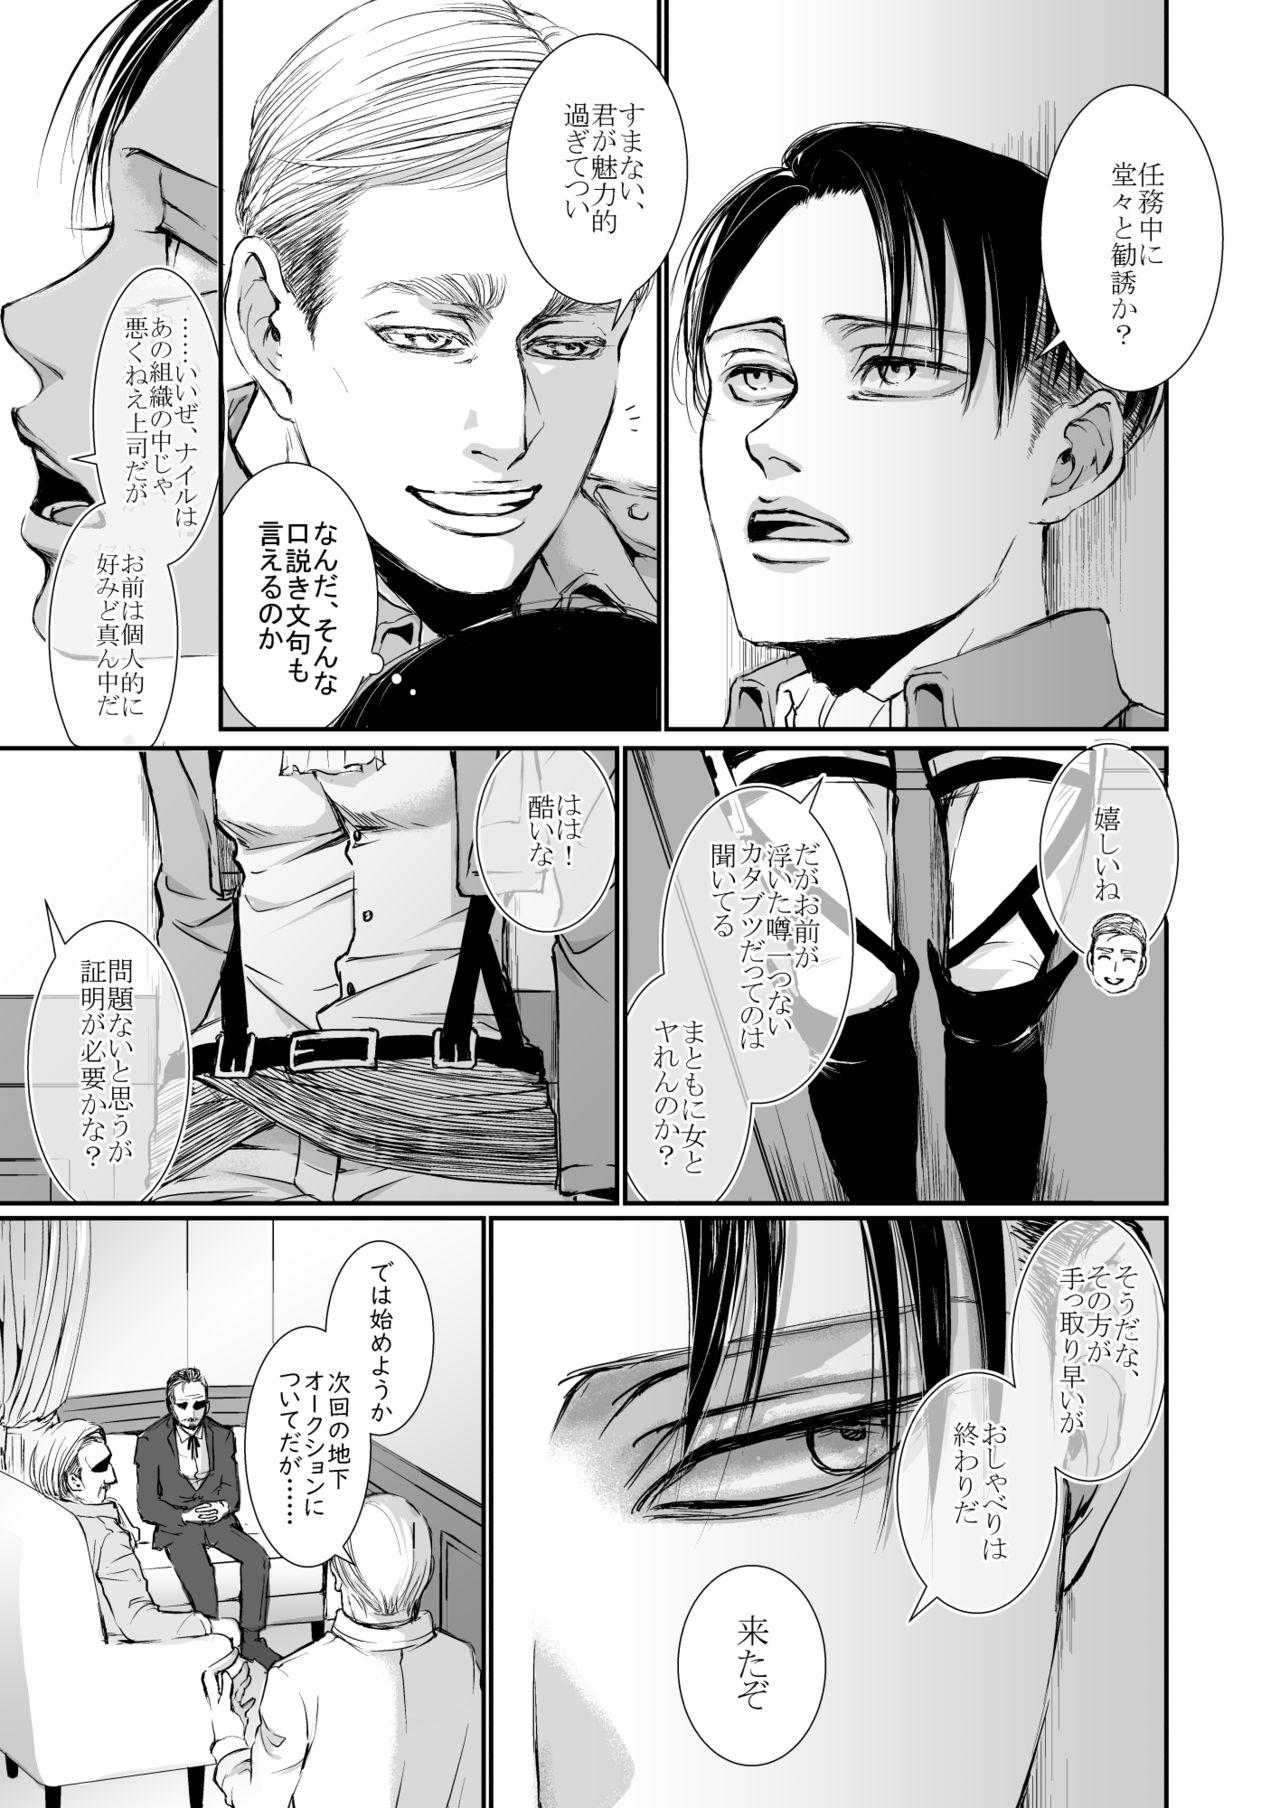 Harcore Chousa Heidan-bun Taichou x Kenpeidan Ni Yotari - Shingeki no kyojin | attack on titan Lesbians - Page 5